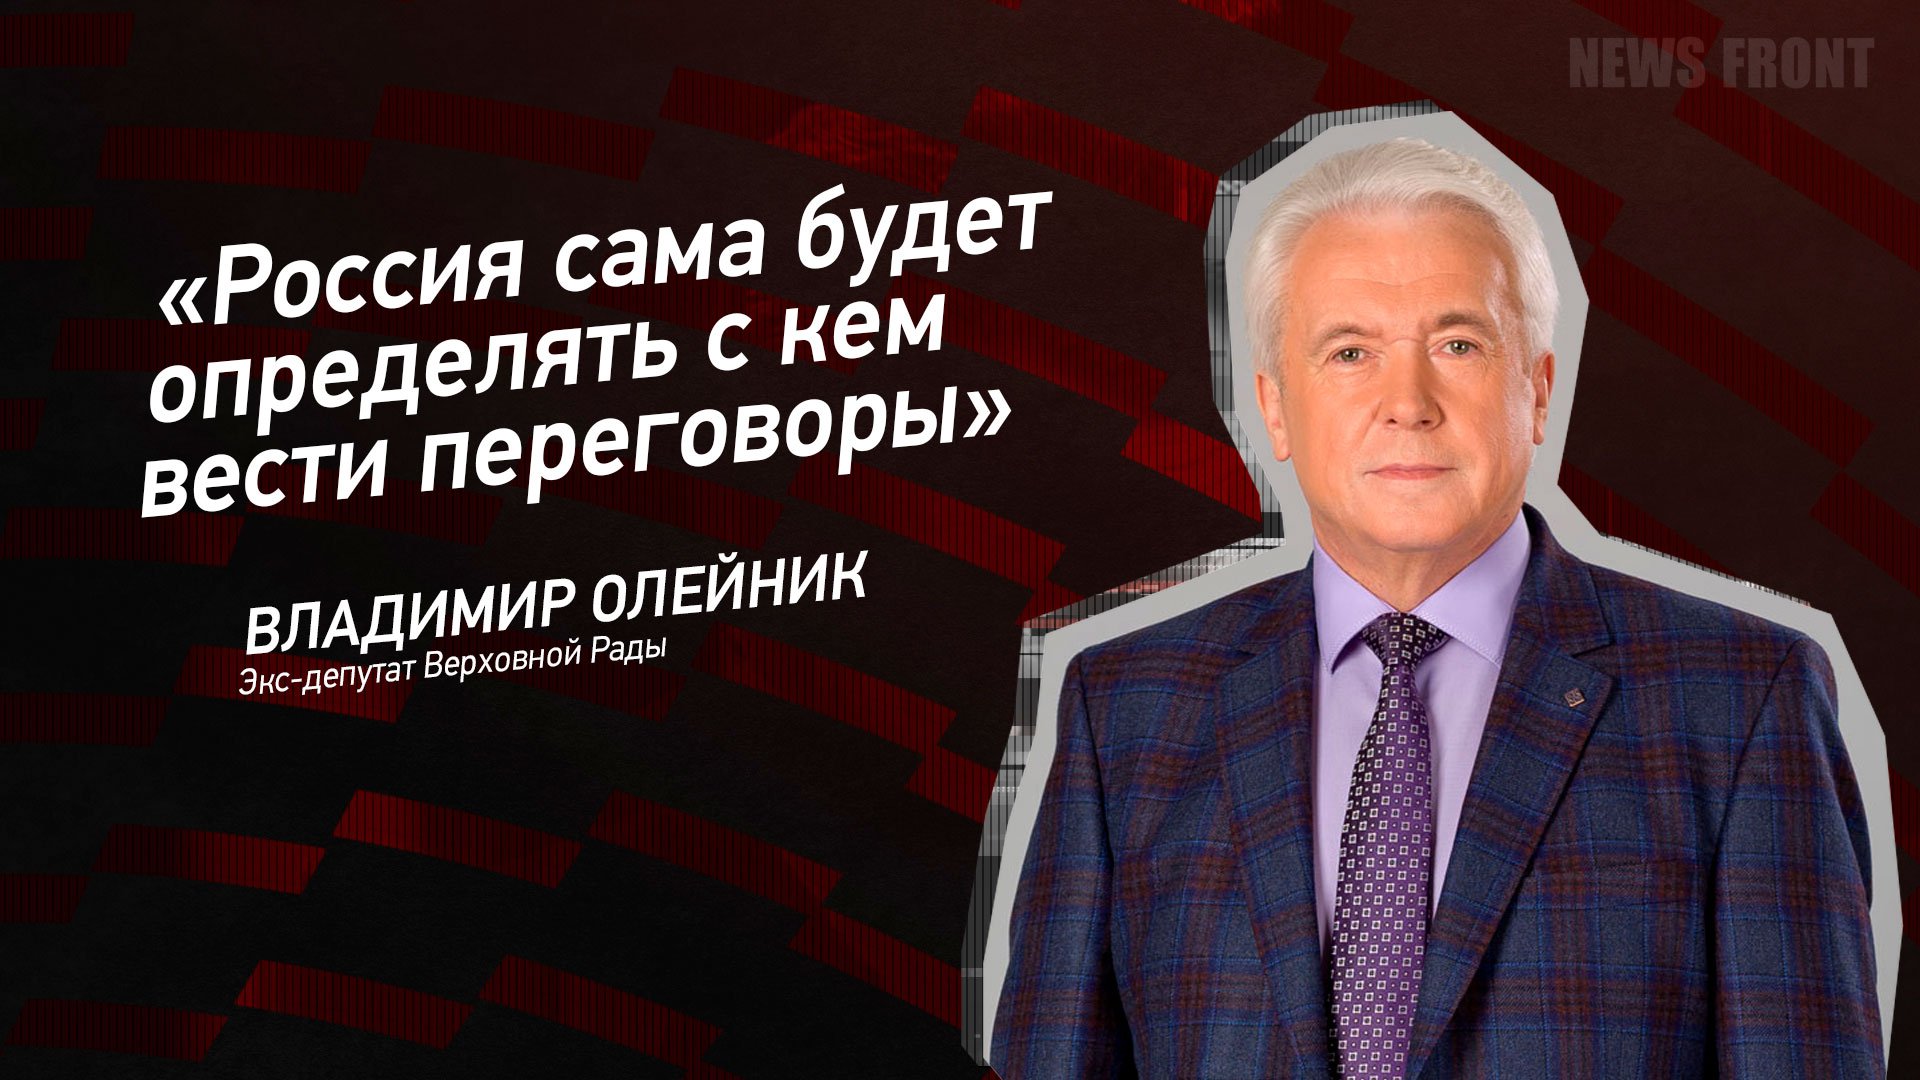 "Россия сама будет определять с кем вести переговоры" - Владимир Олейник